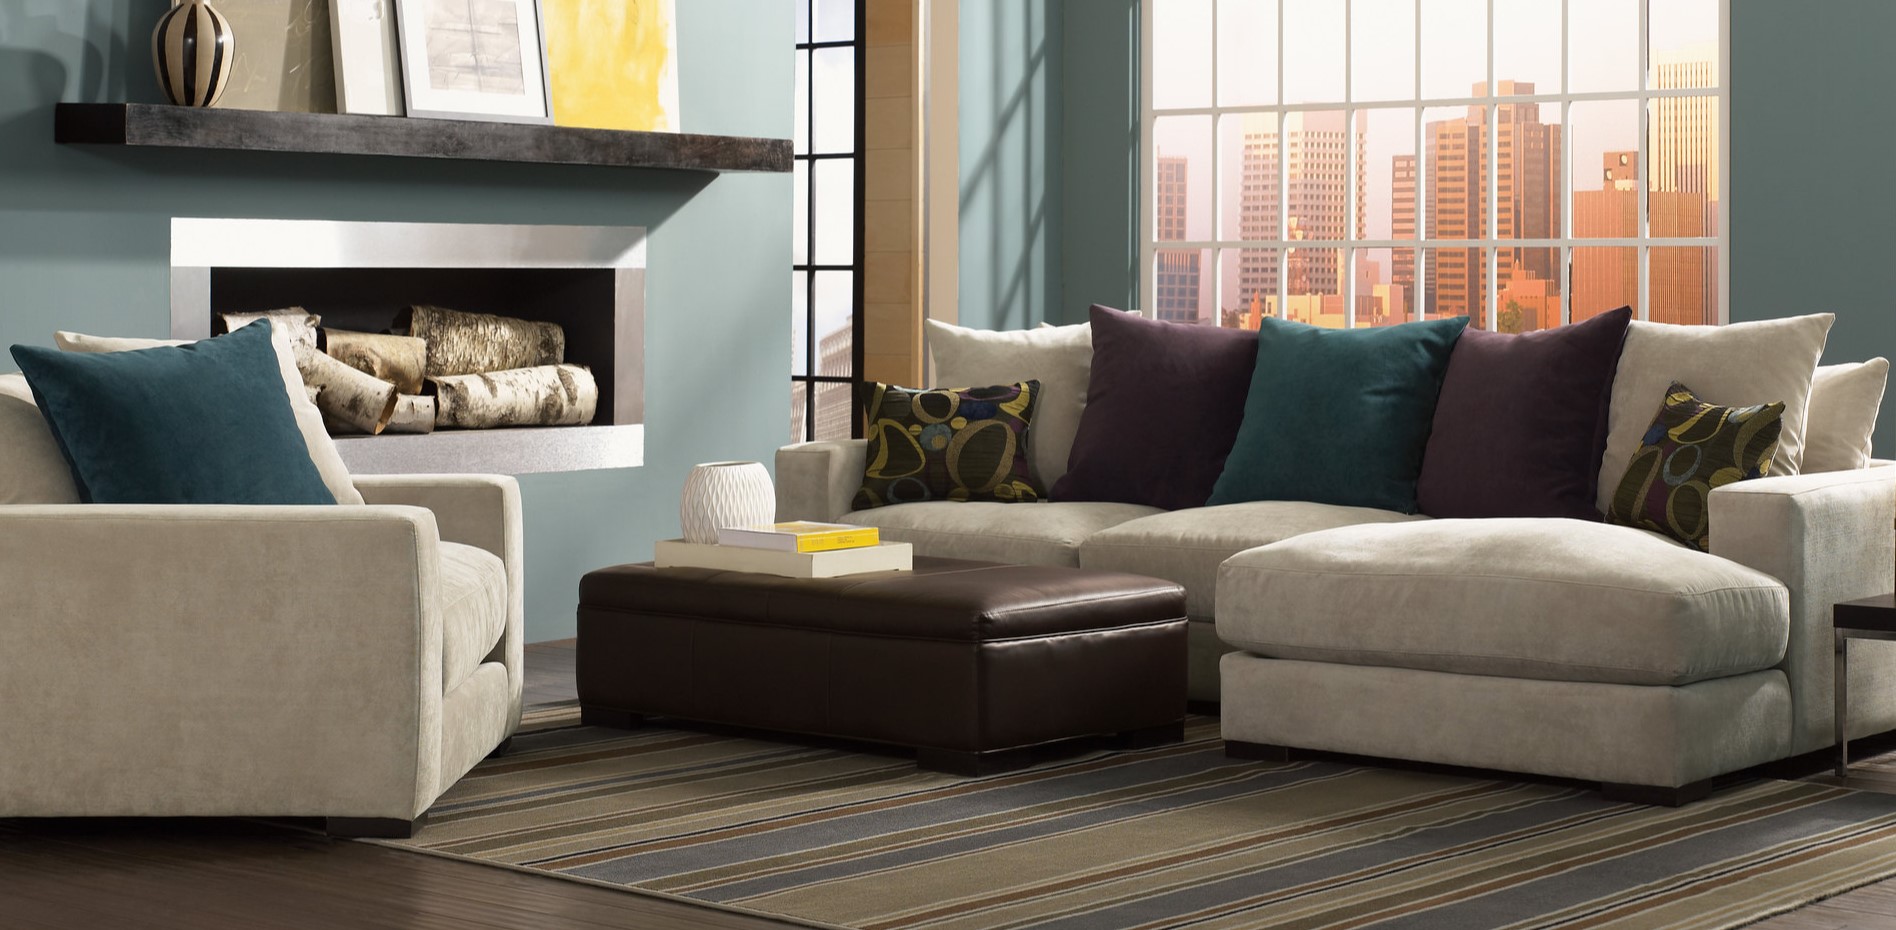 Под цвет и стиль дивана можно подобрать удобное кресло для гостиной